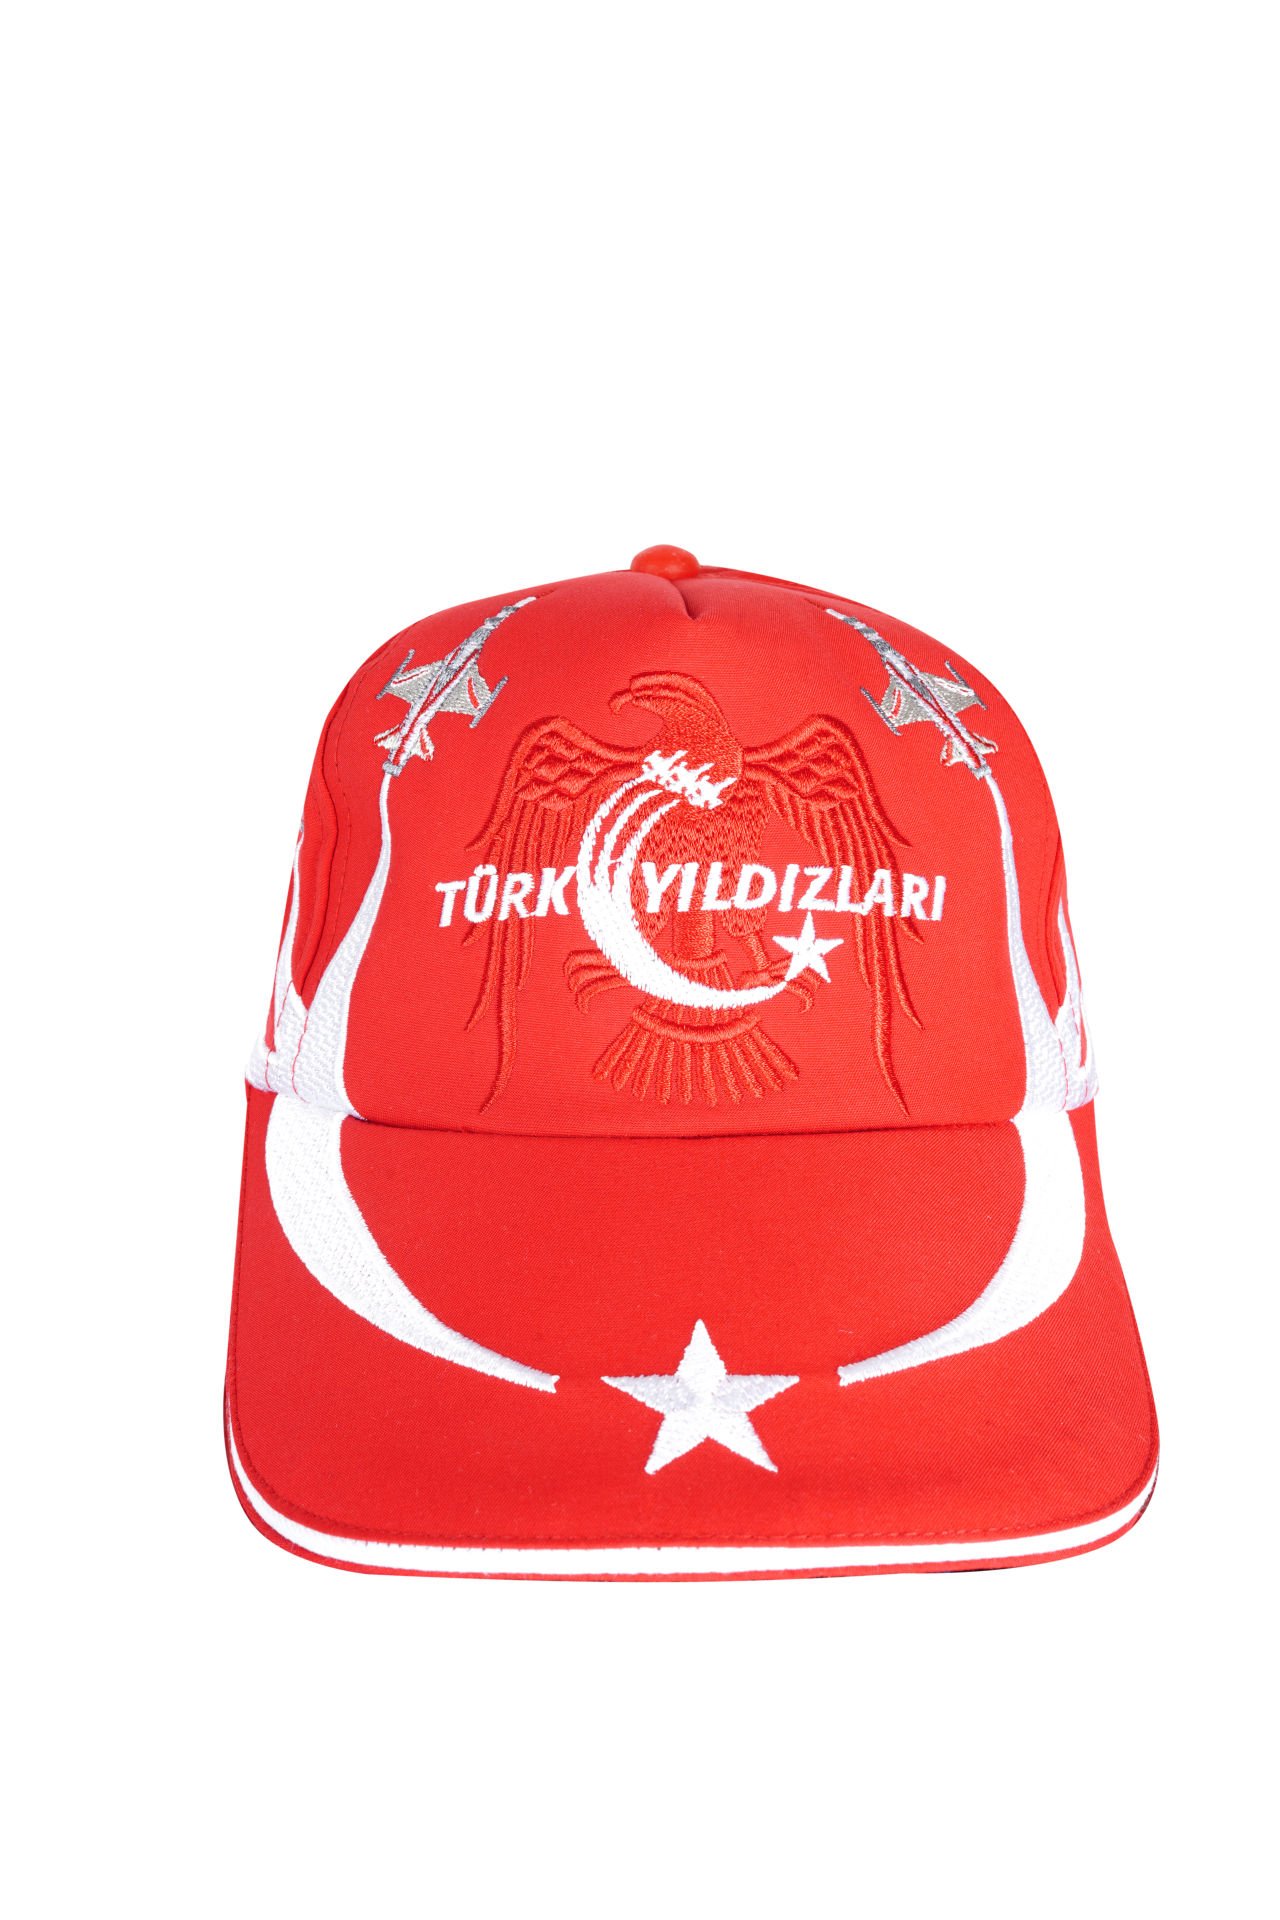 Türk Yıldızları Kırmızı Uçaklı Şapka